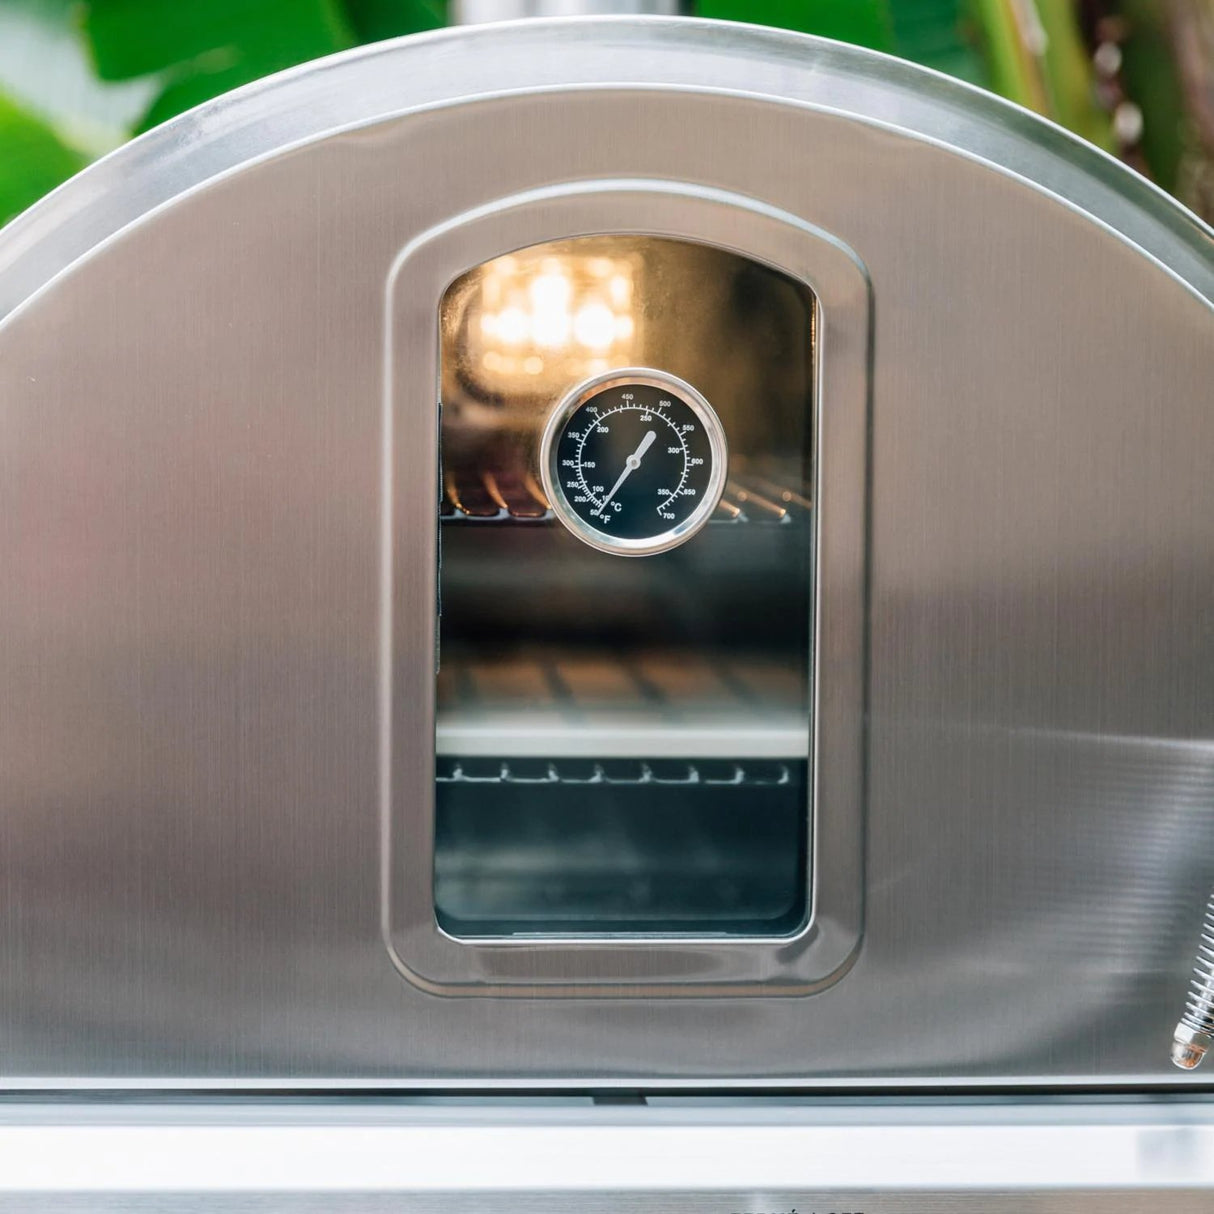 Summerset Freestanding Gas Outdoor Pizza Oven on Cart - SS-OVFS